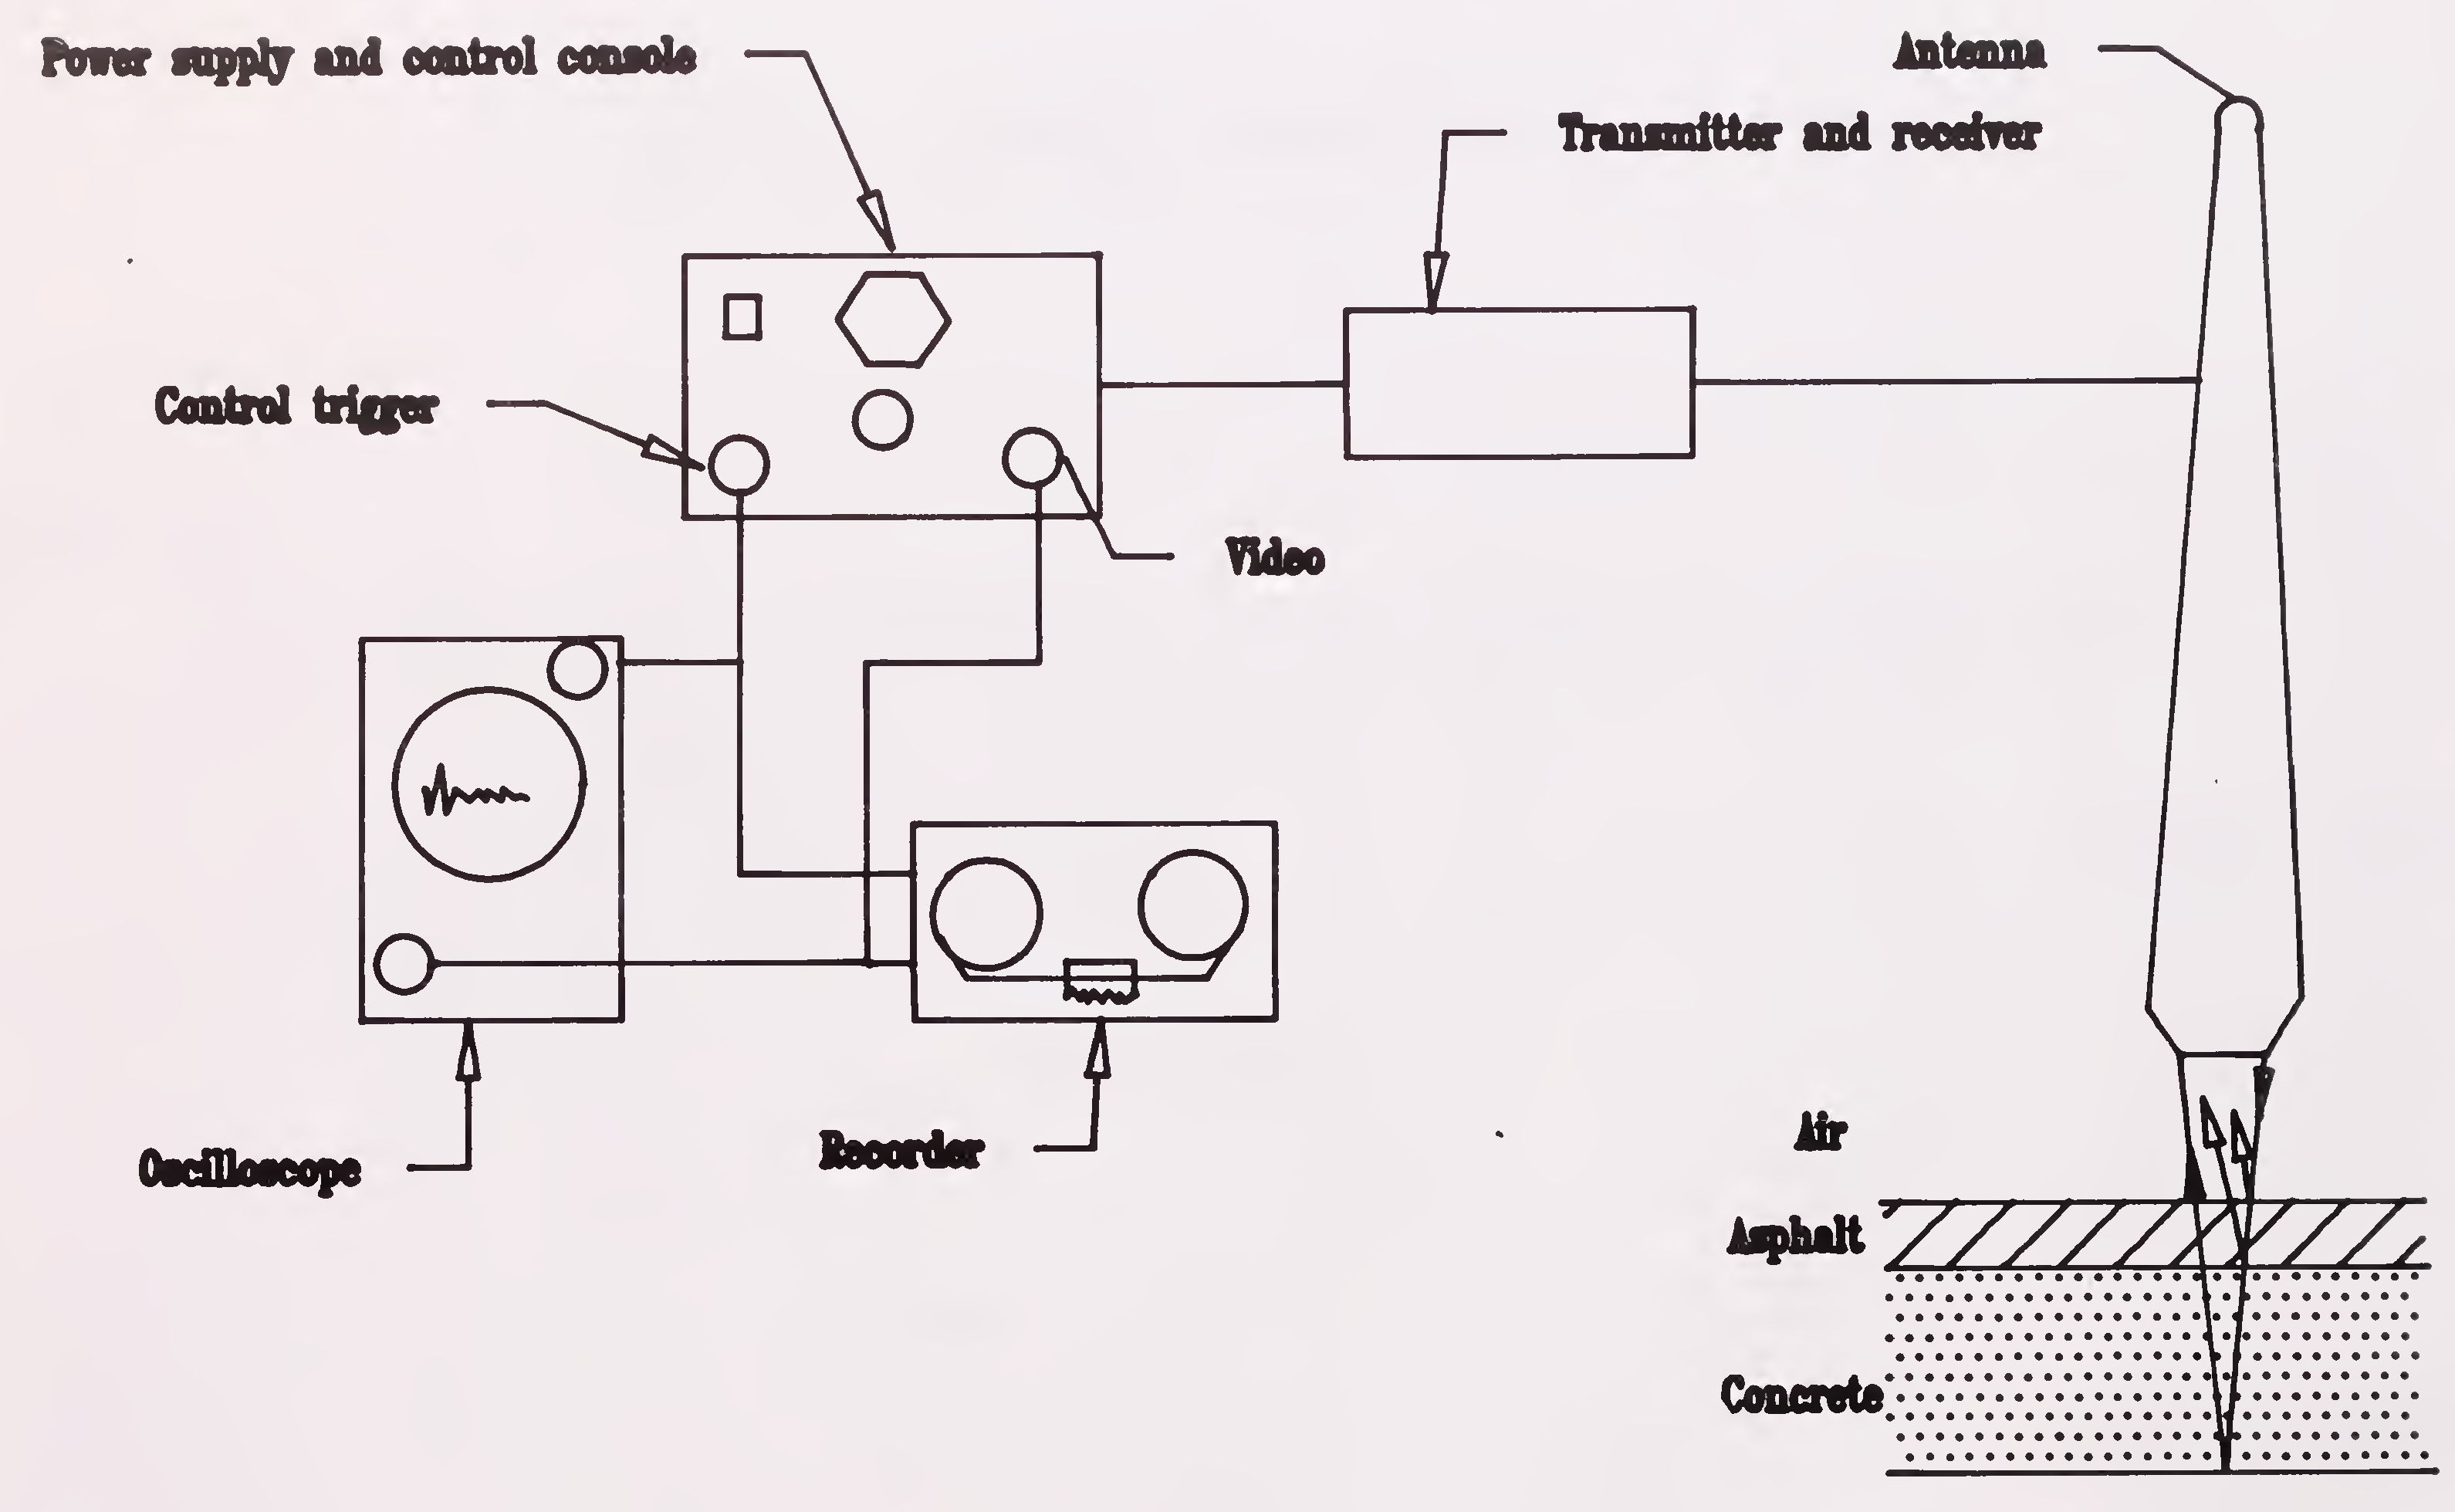 Fig.4.2 Elements of a radar system